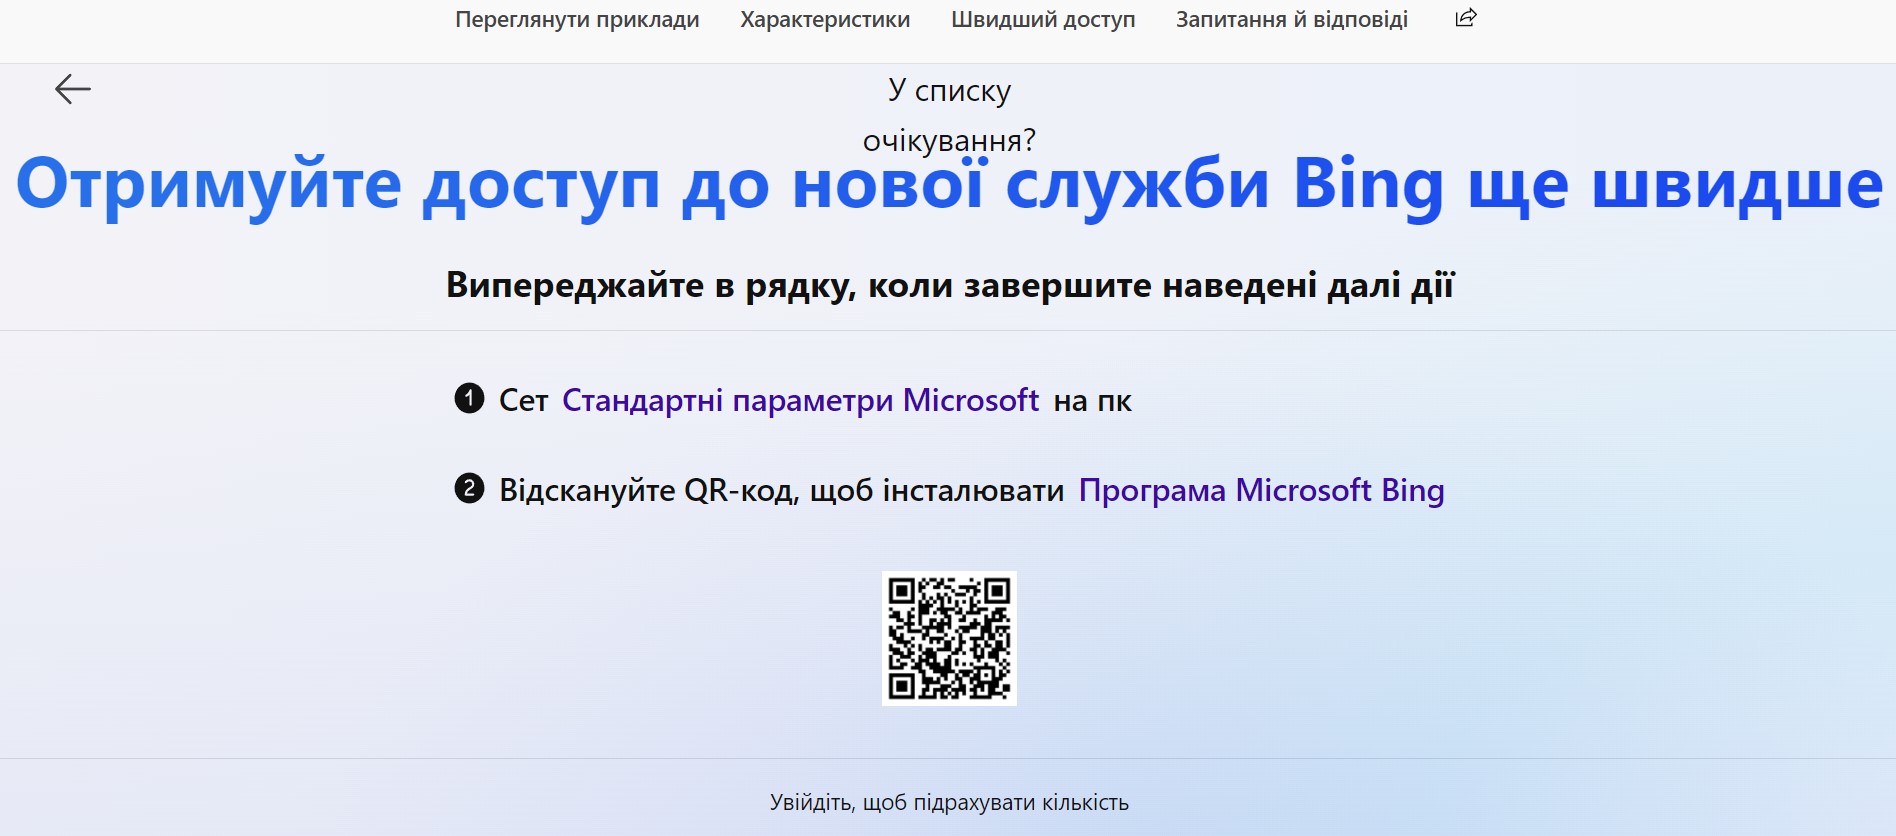 Новый поисковик Microsoft Bing с чат-ботом ChatGPT доступен всем желающим. Как попробовать?